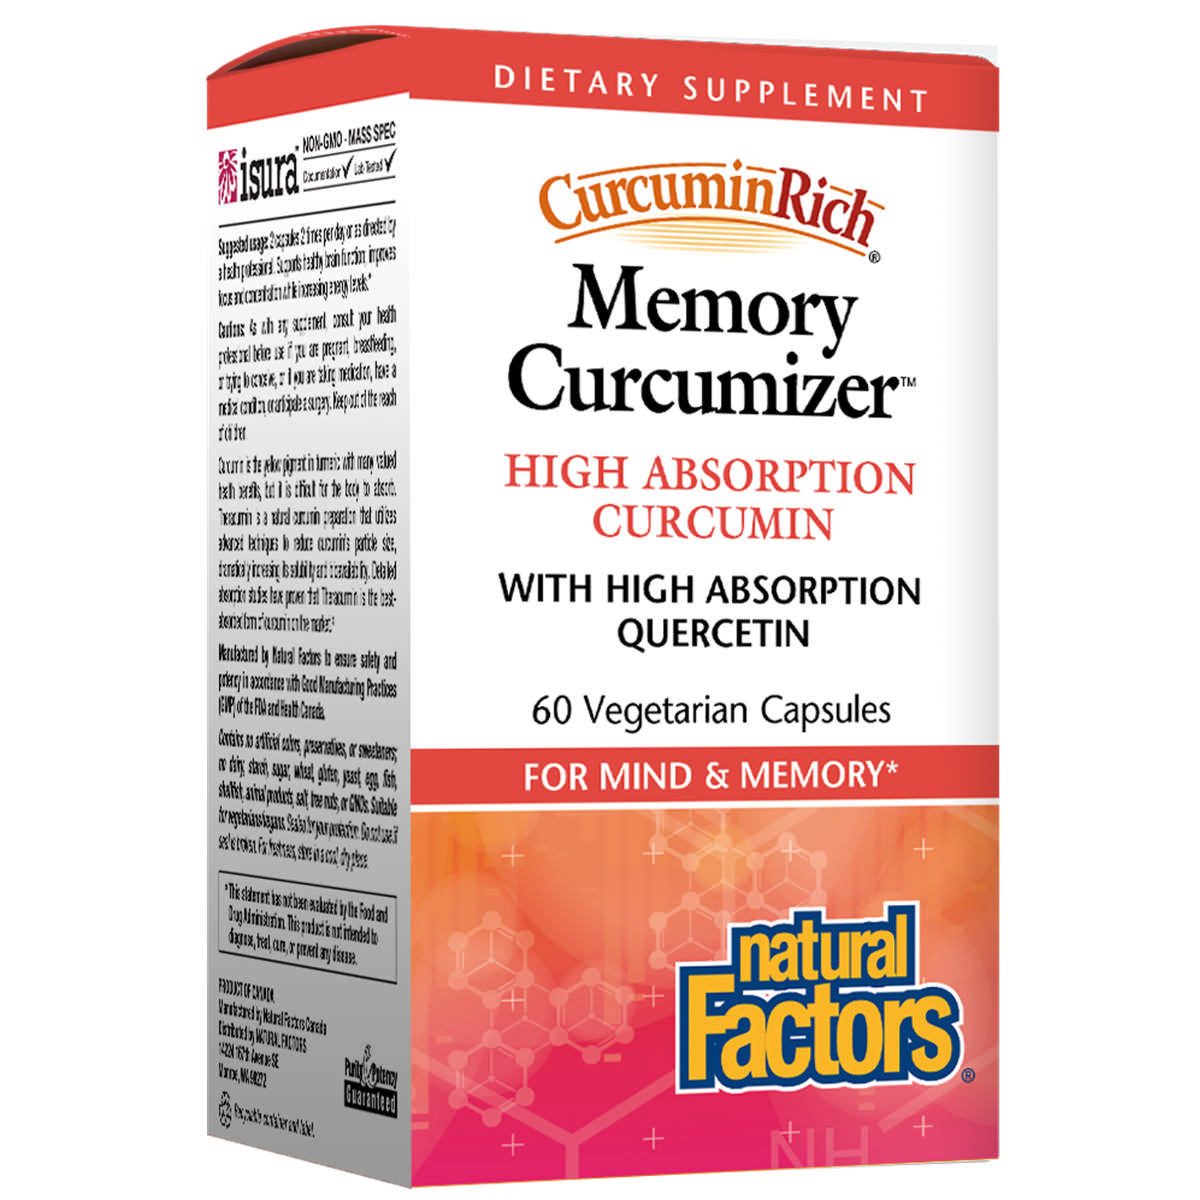 Natural Factors - Memory Optimizer Curcuminrich